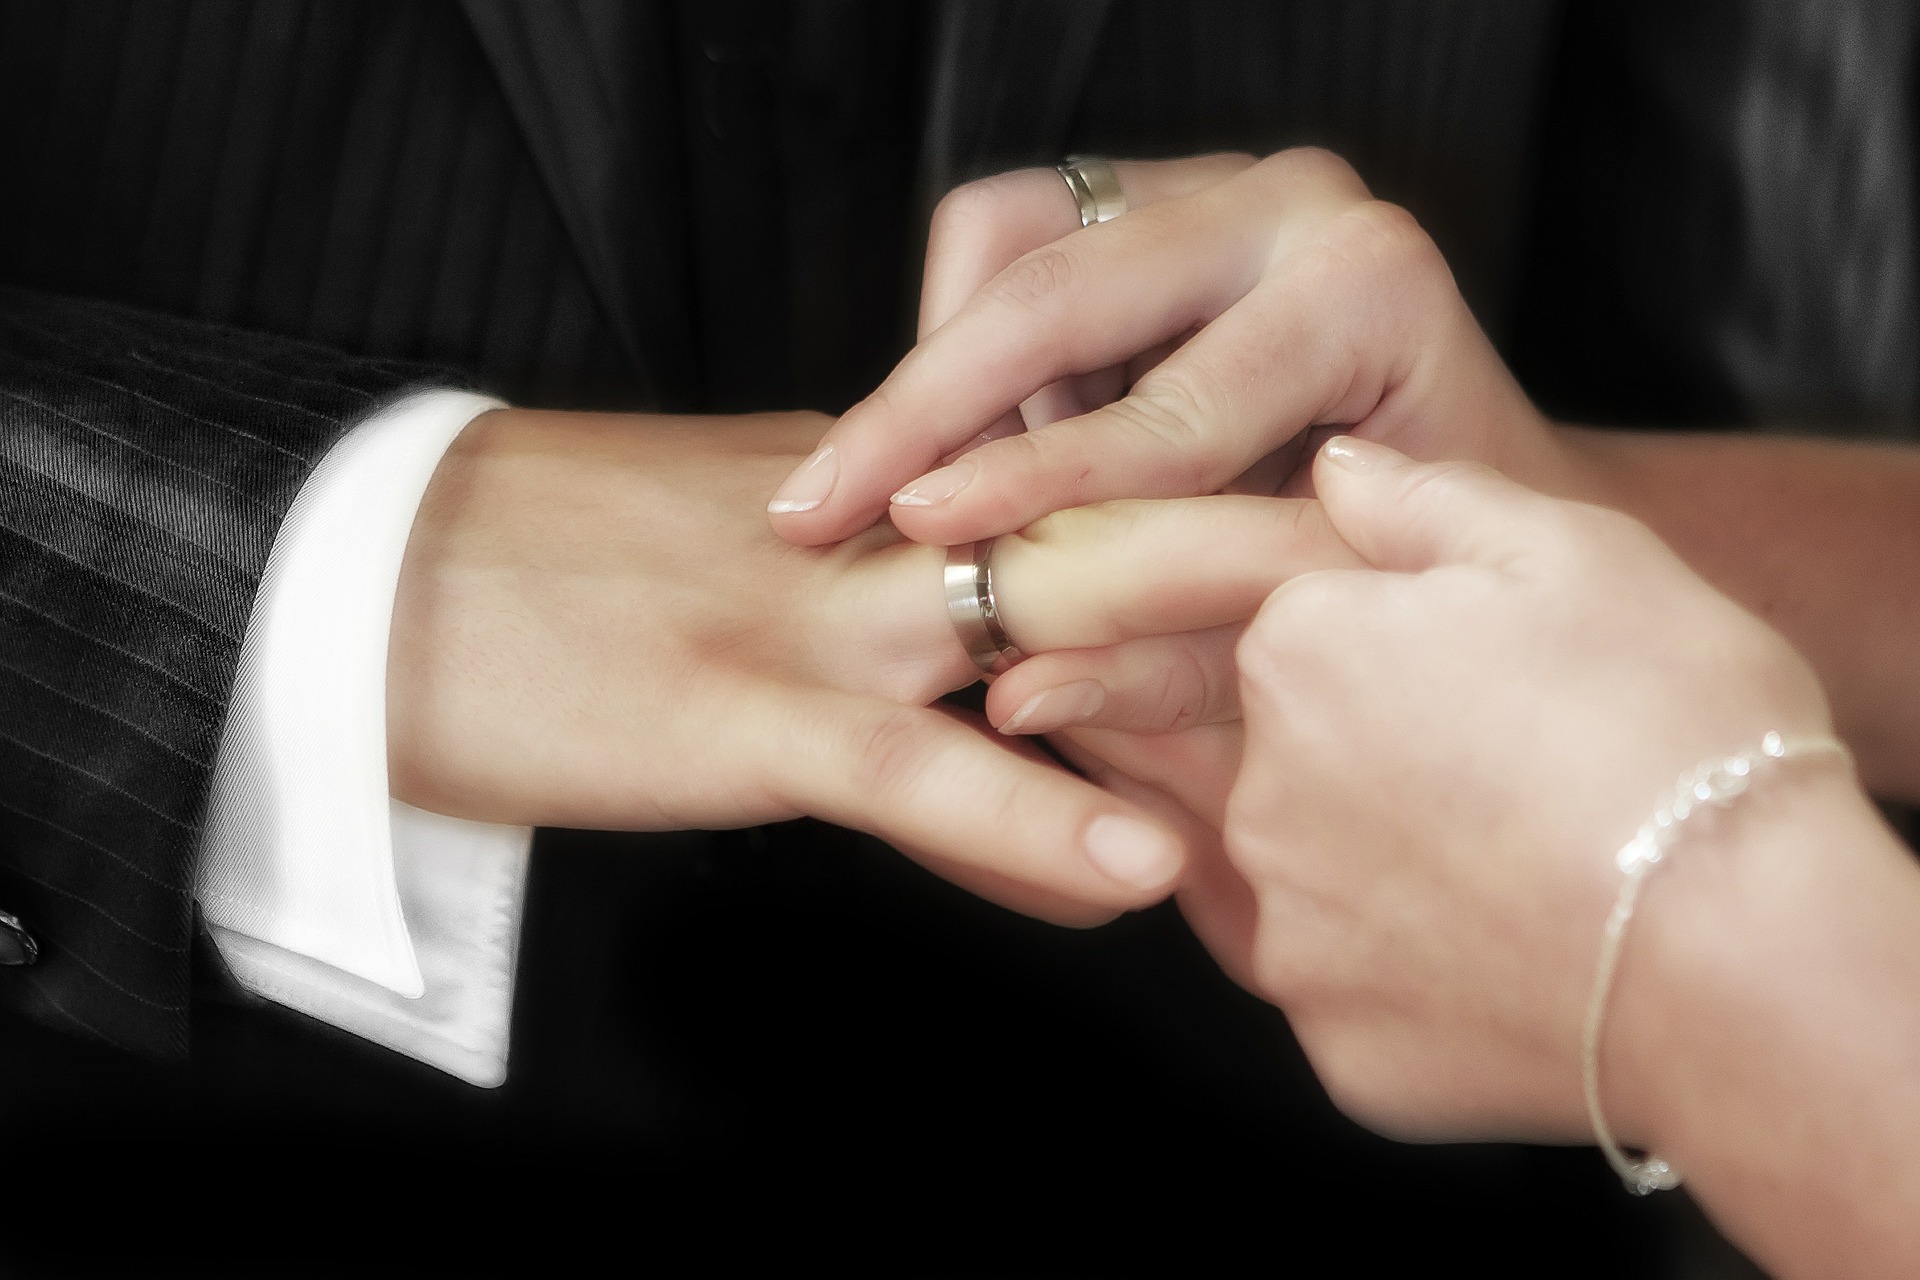 300-ая пара молодоженов зарегистрировала брак в Сафоновском районе 